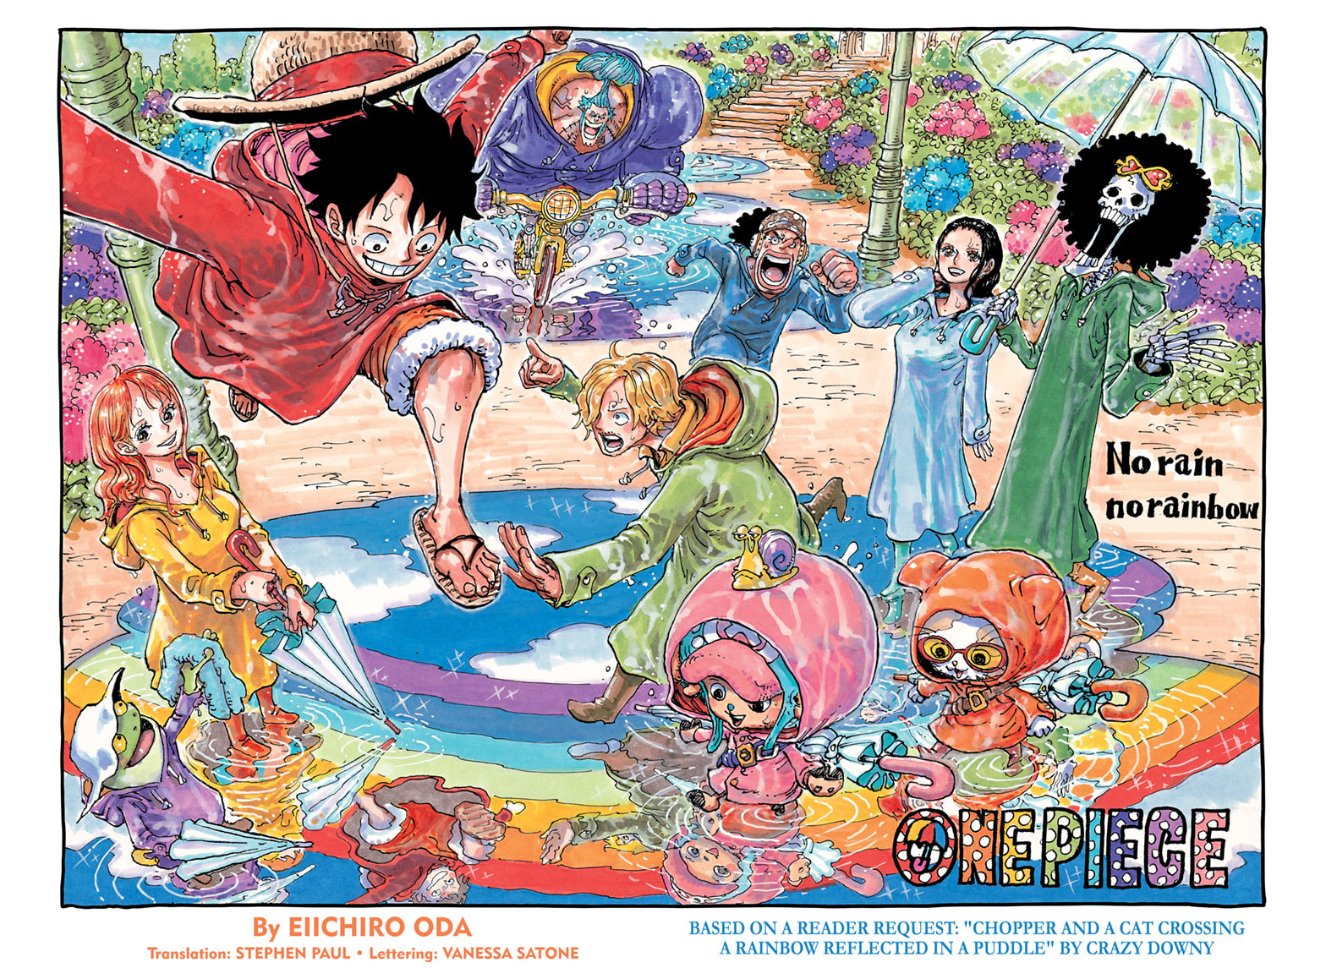 One Piece: Sabem o que seria louco? Uma classificação melhor de